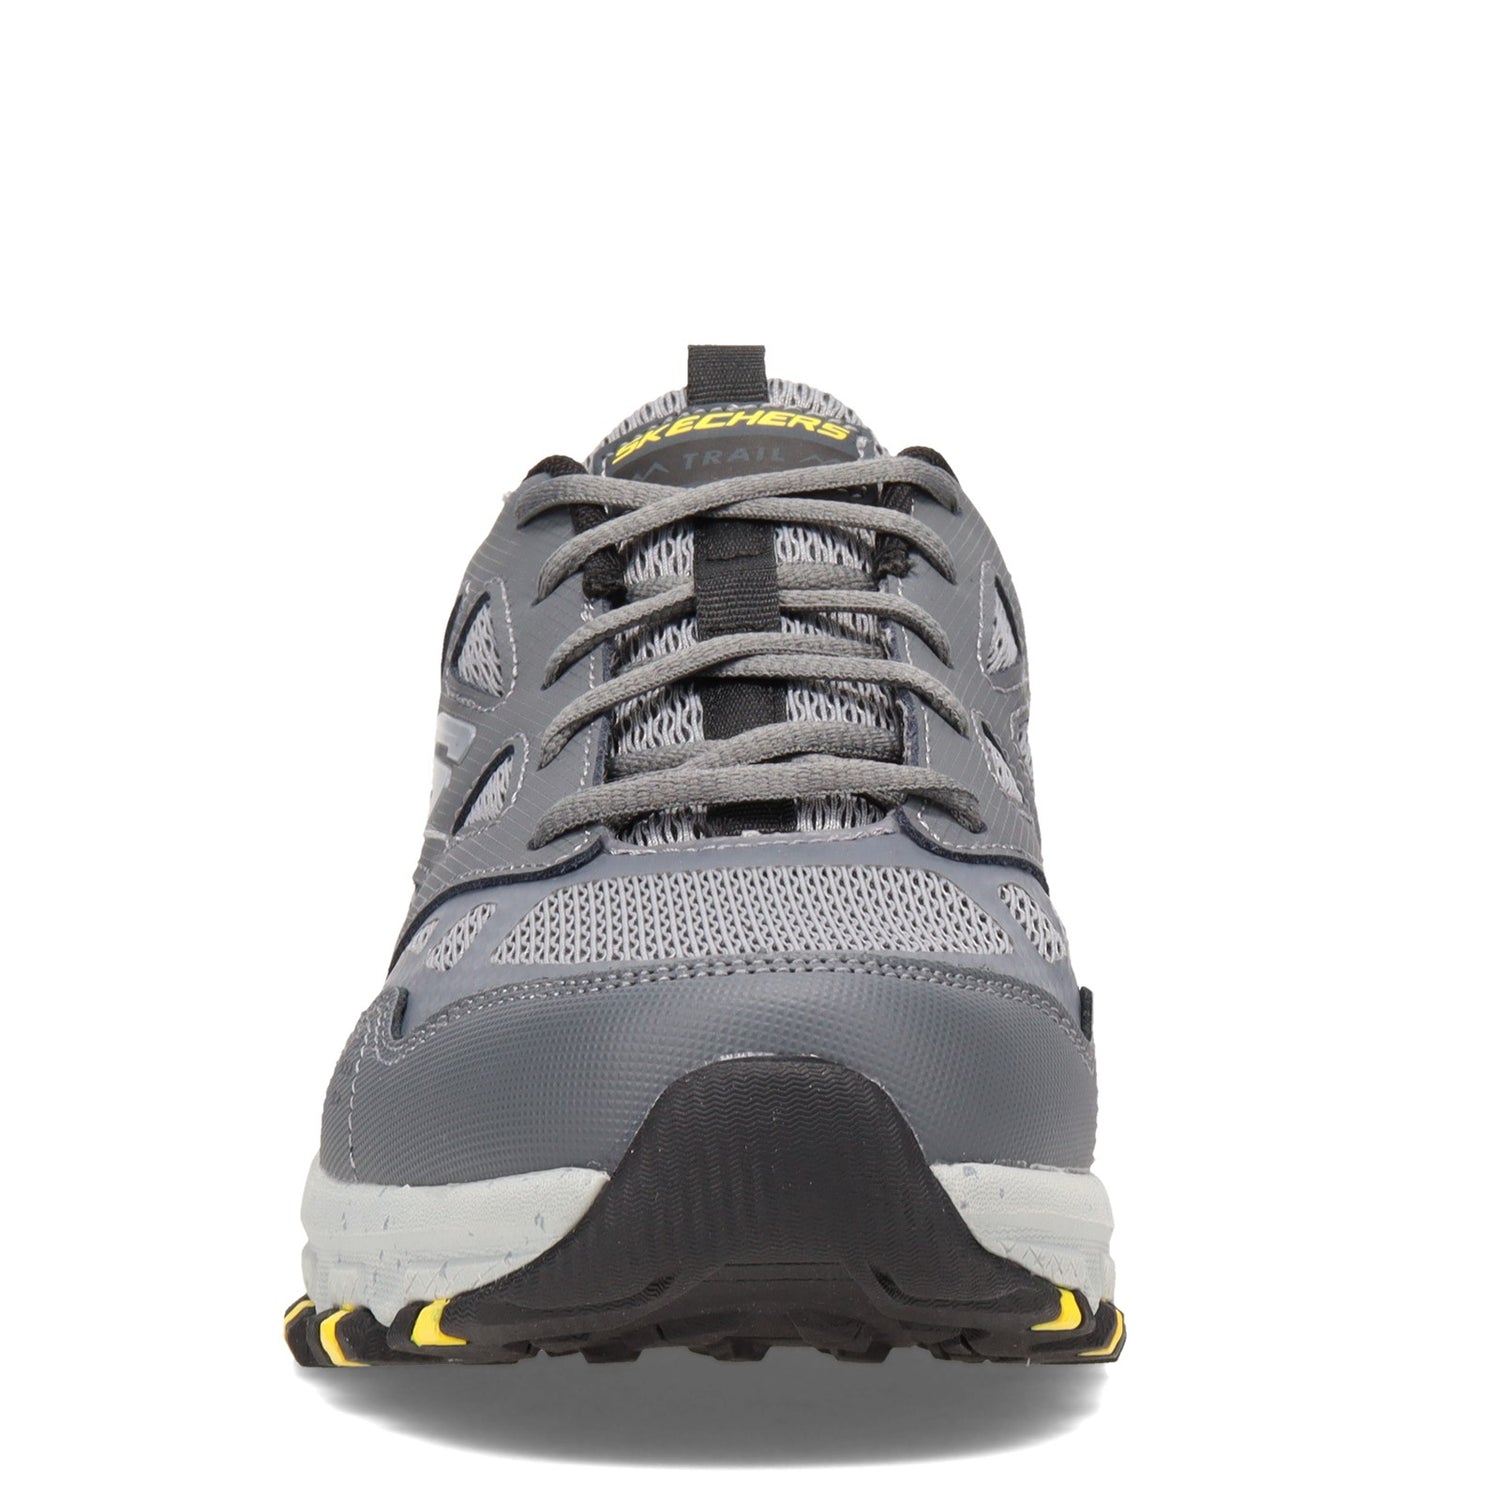 Peltz Shoes  Men's Skechers Hillcrest - Vast Adventure Walking Shoe Charcoal/Black 237265-CCBK